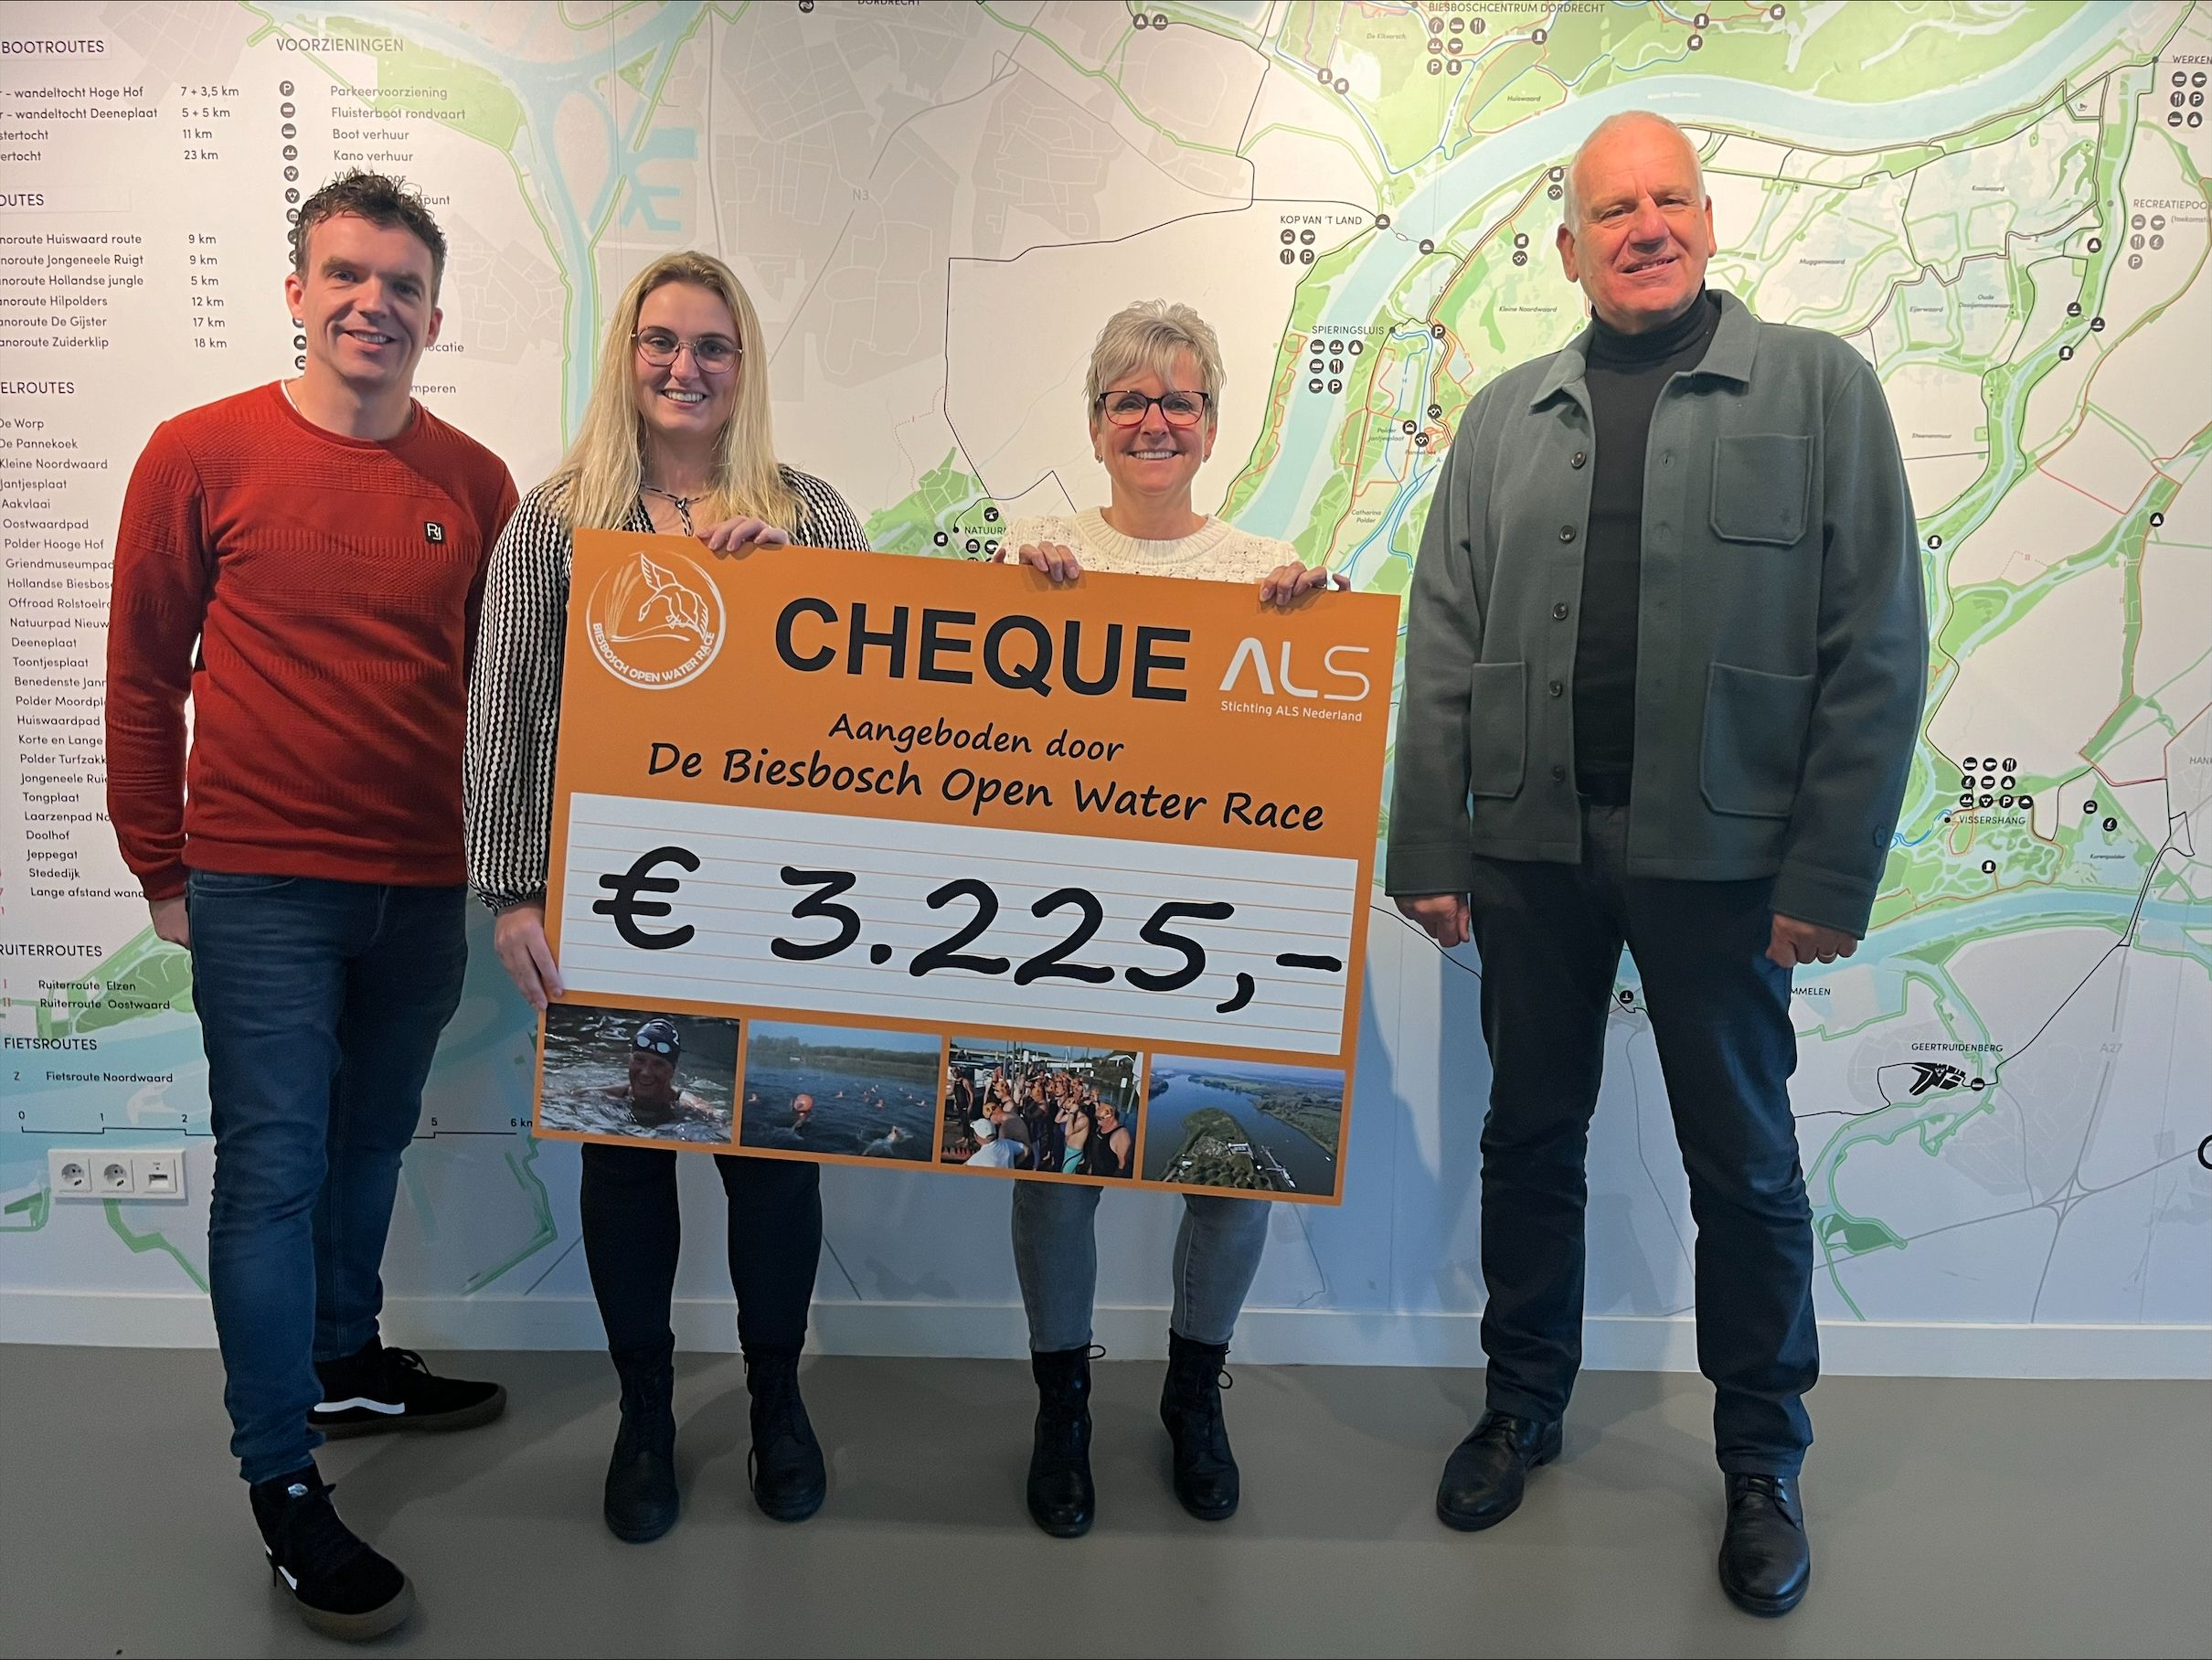 Uitreiking cheque aan Stichting ALS Nederland